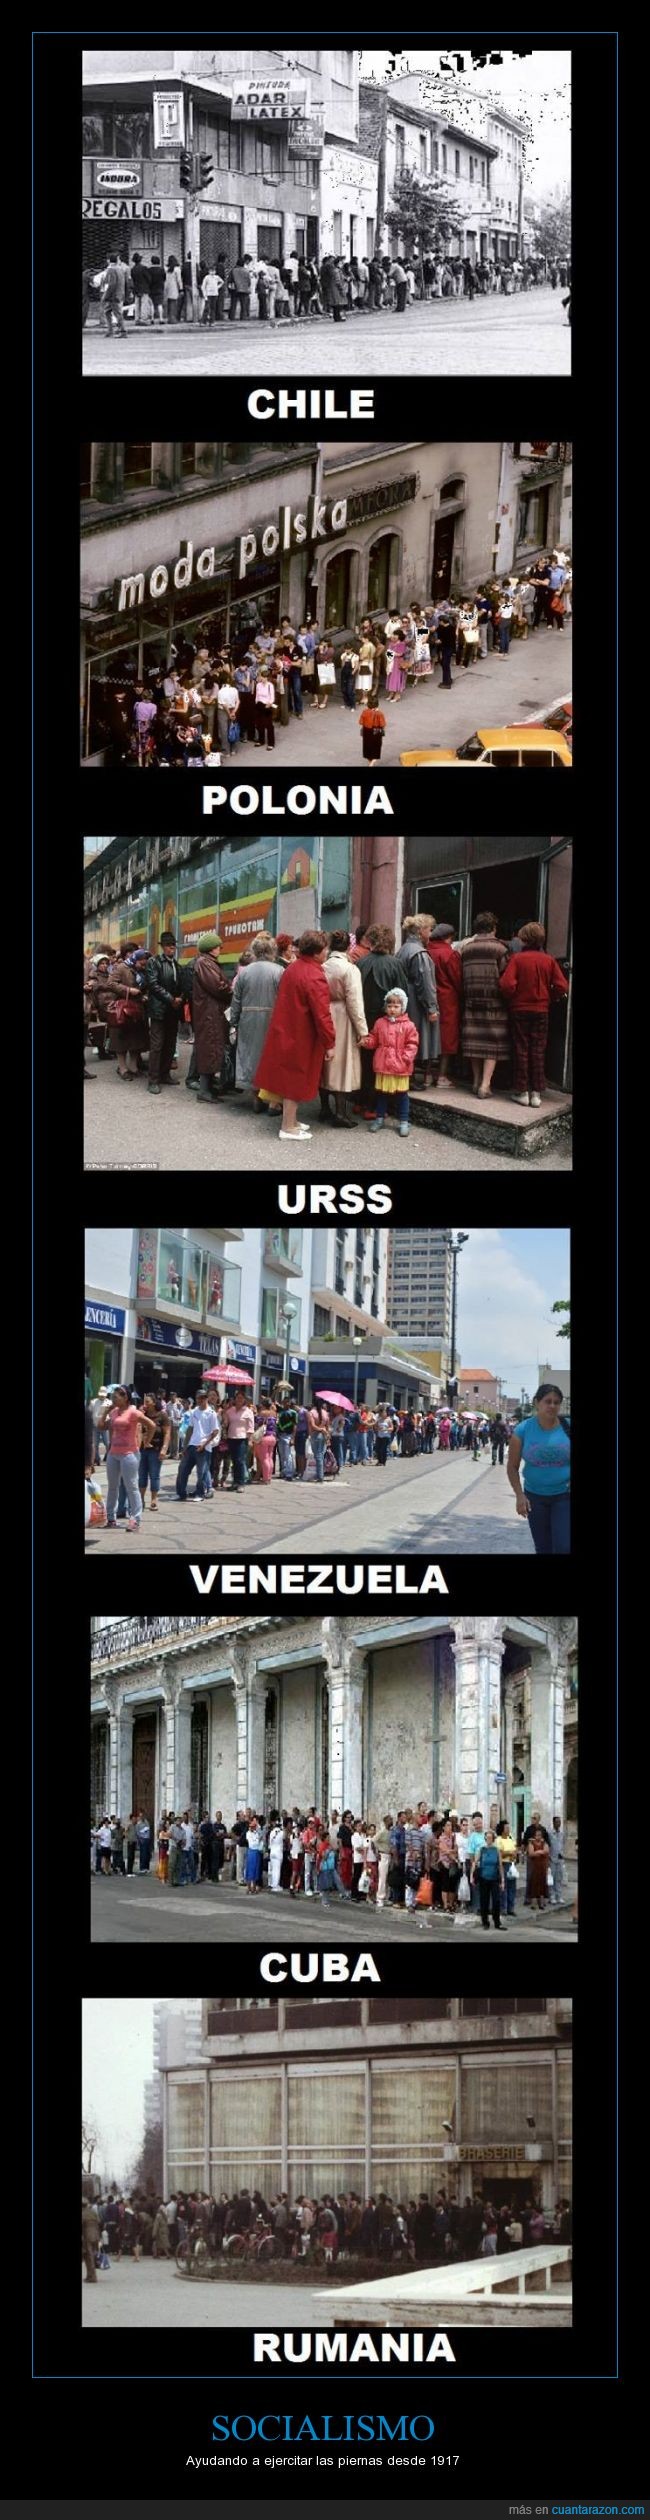 país,socialismo,cola,pararse,Rusia,Cuba Chile,Venezuela,Rumania,Polonia,URSS,hambre,esperar,devaluación